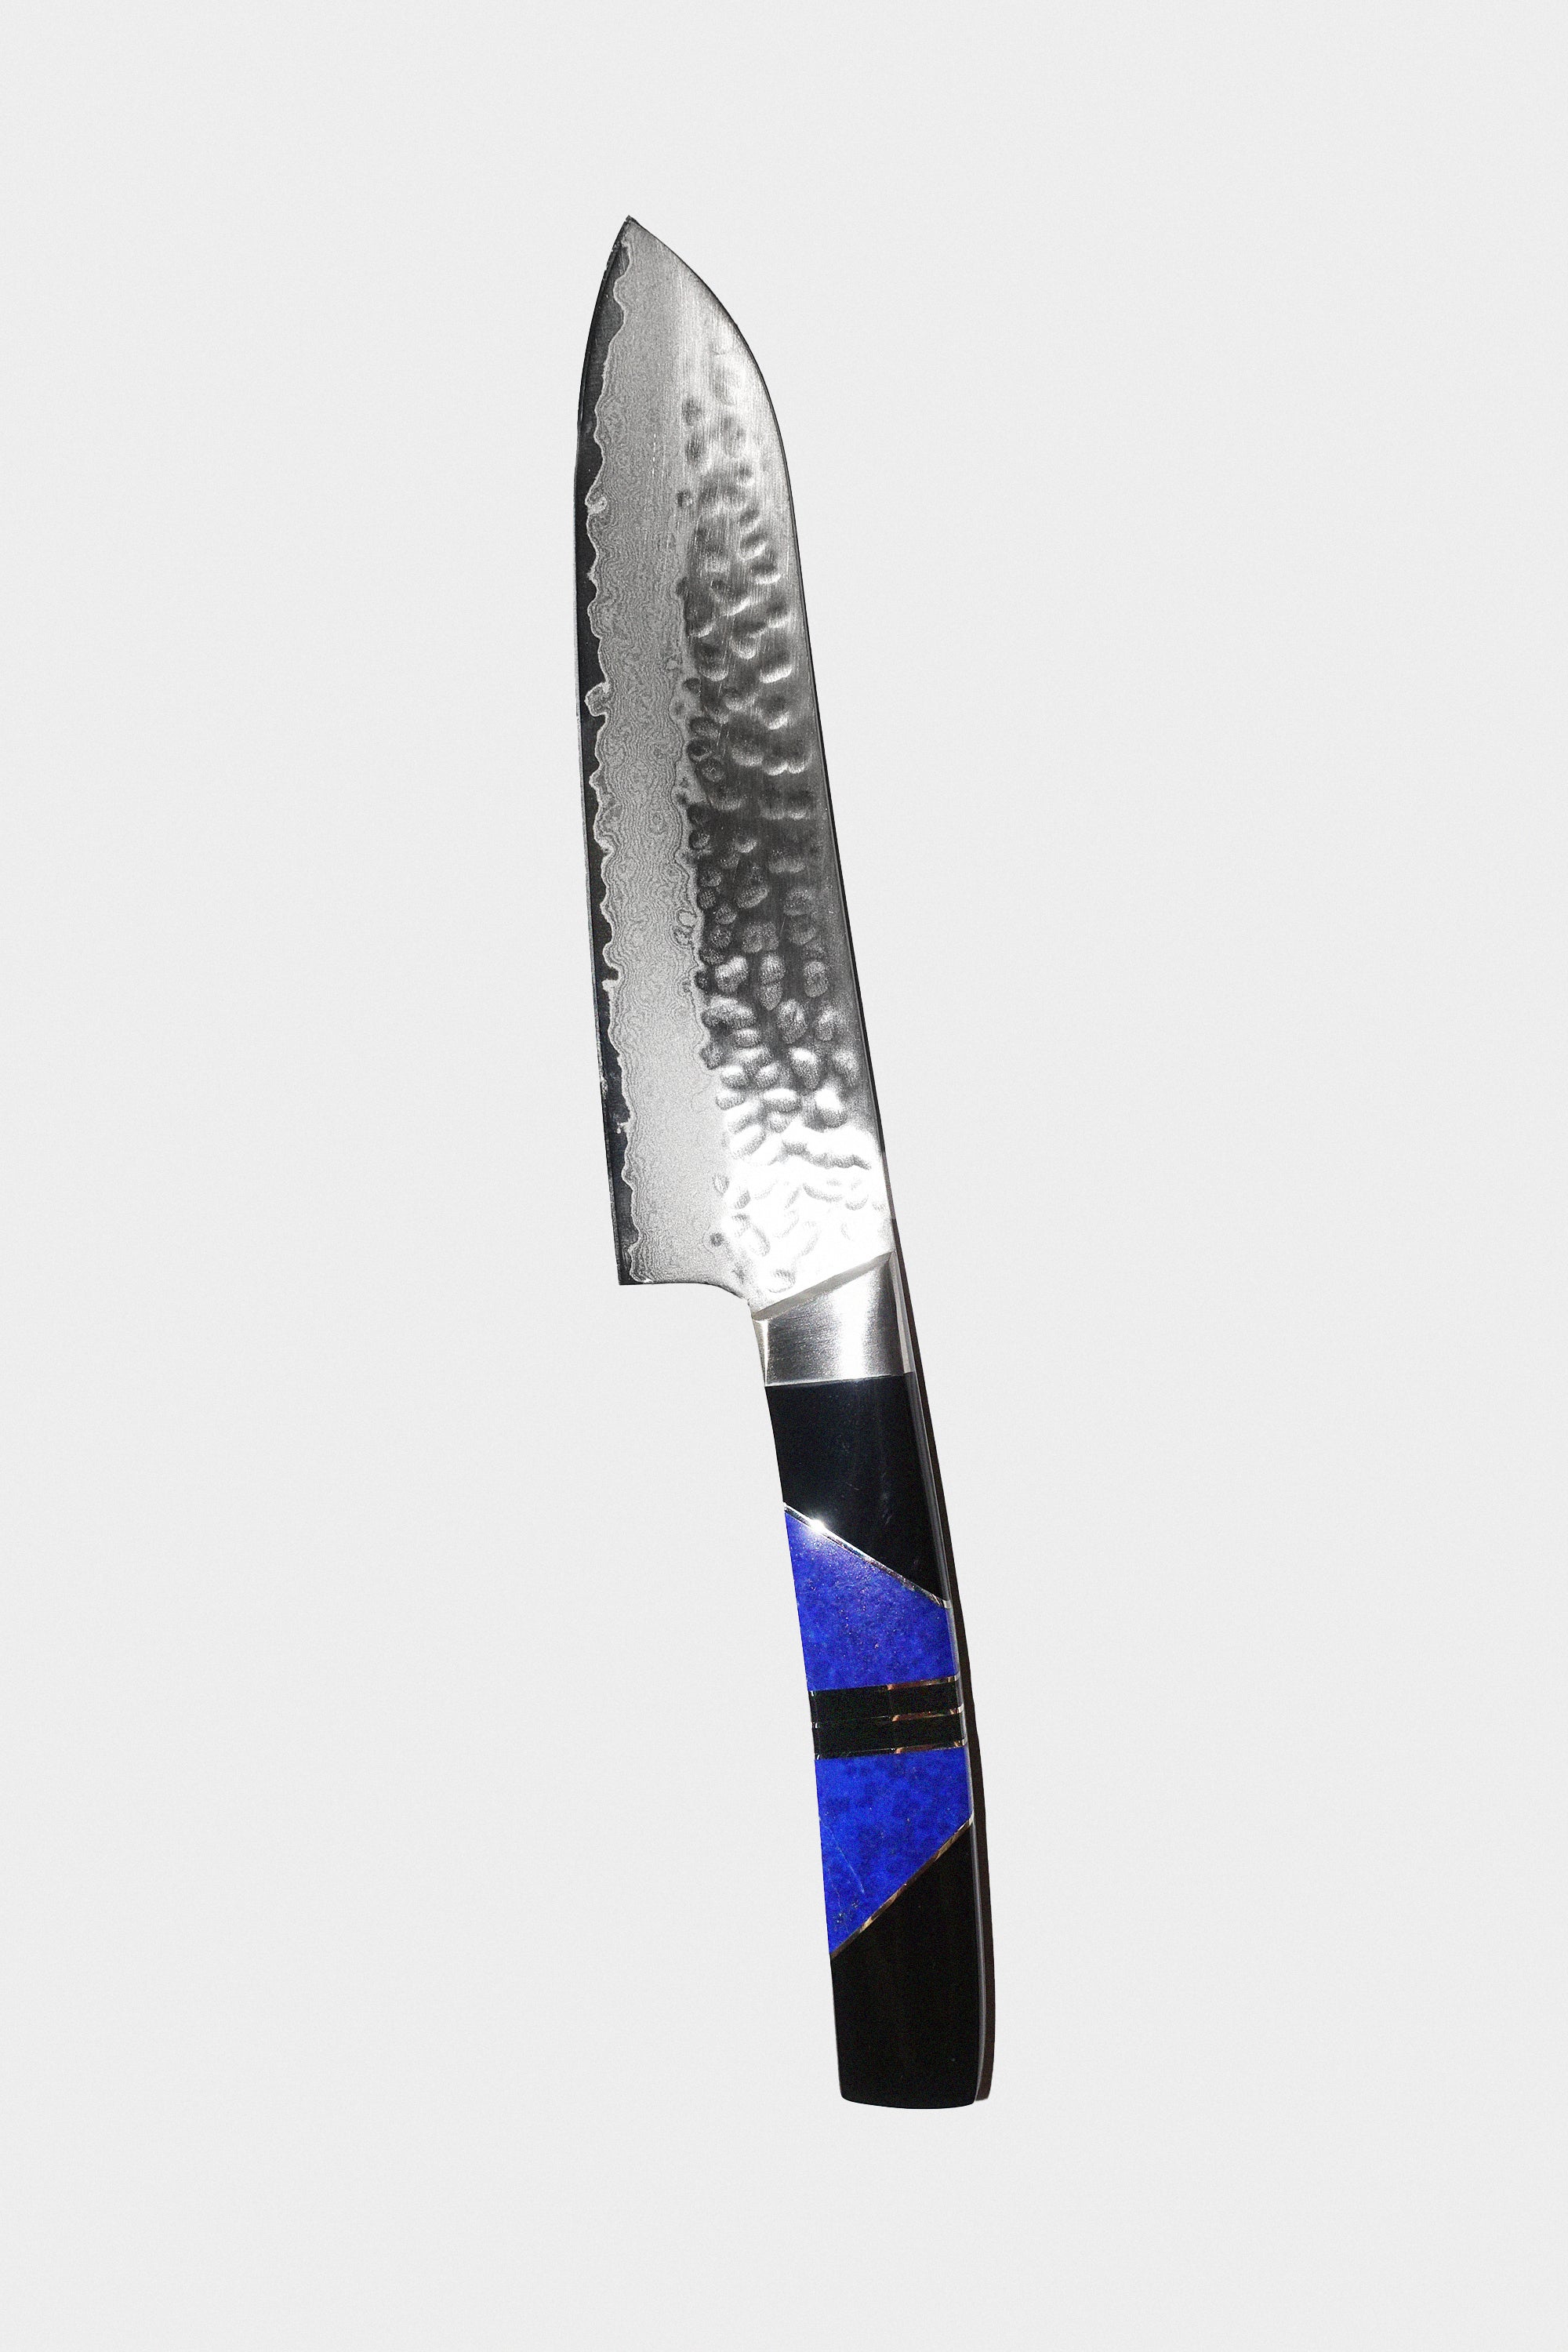 5" Santoku Knife in Lapis